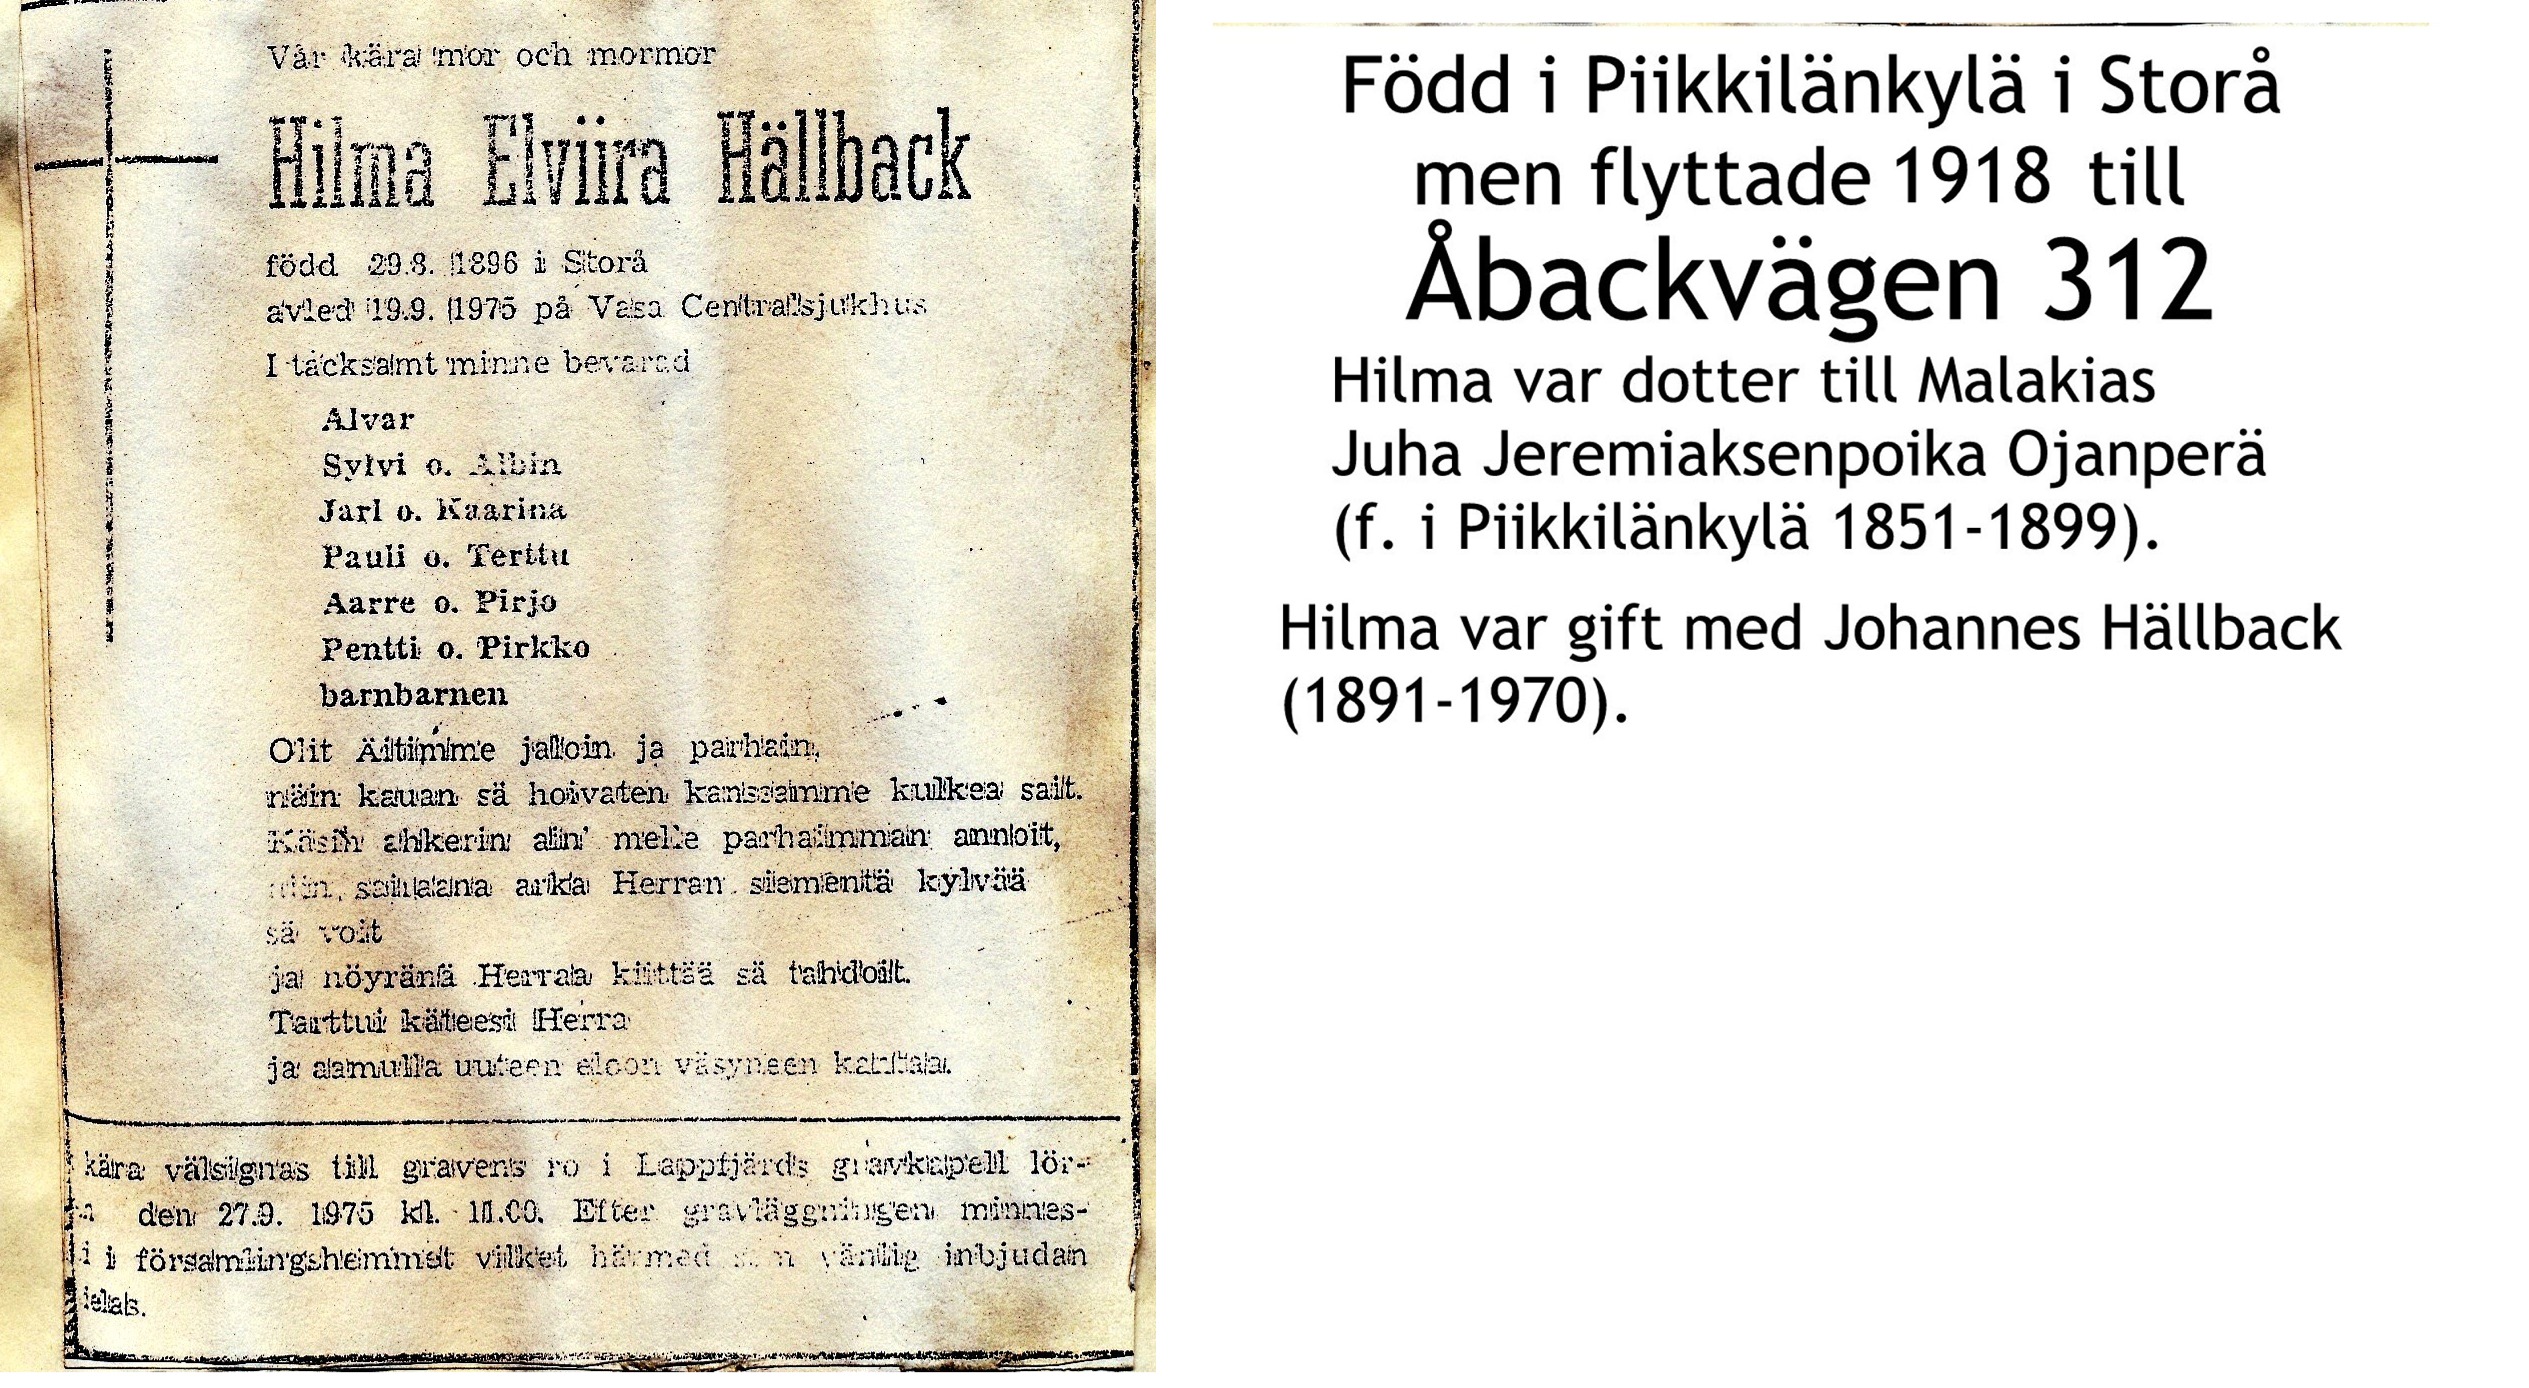 Hällback Hilma Elviira